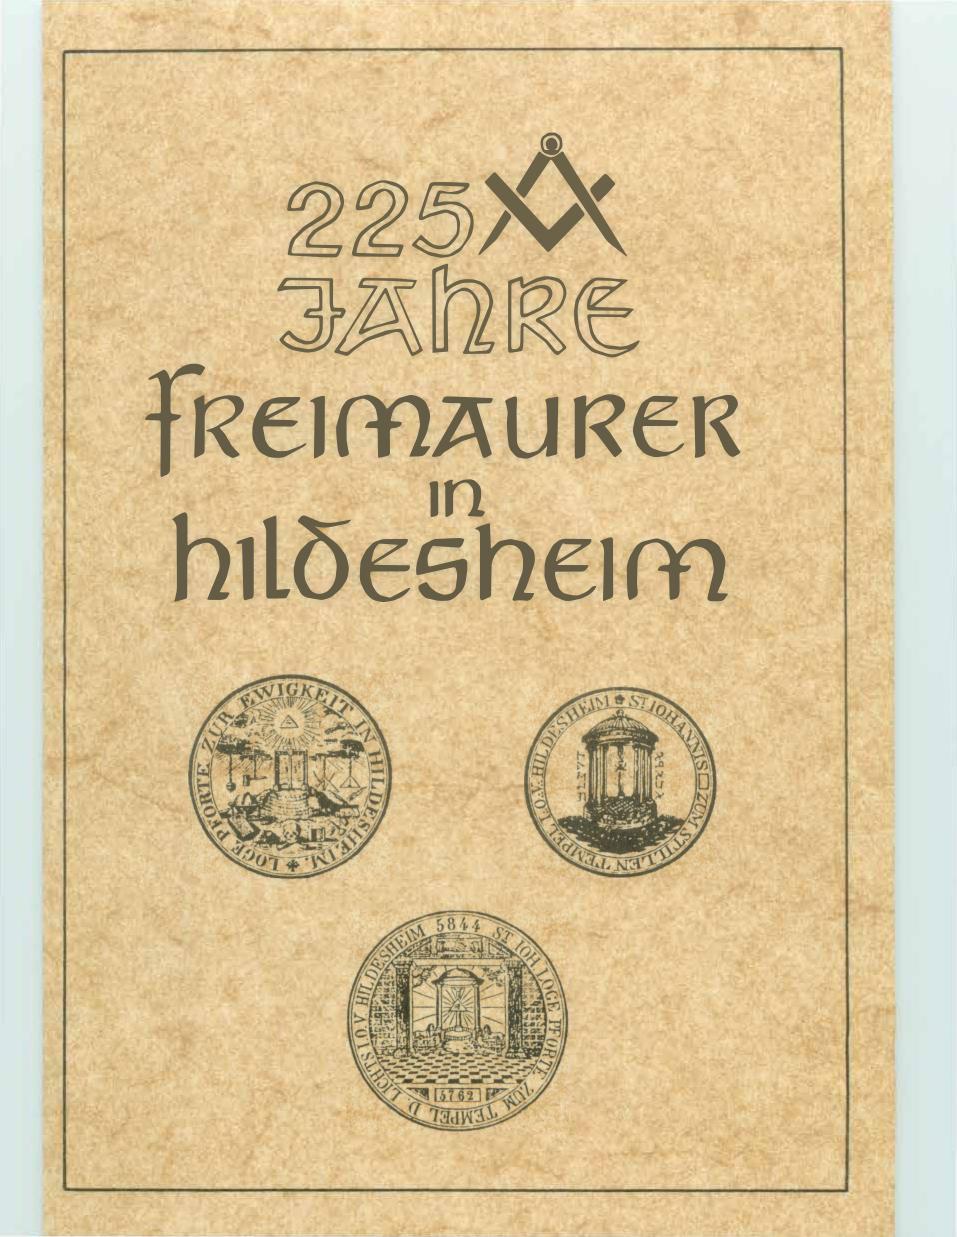 225 Jahre - Freimaurer in Hildesheim